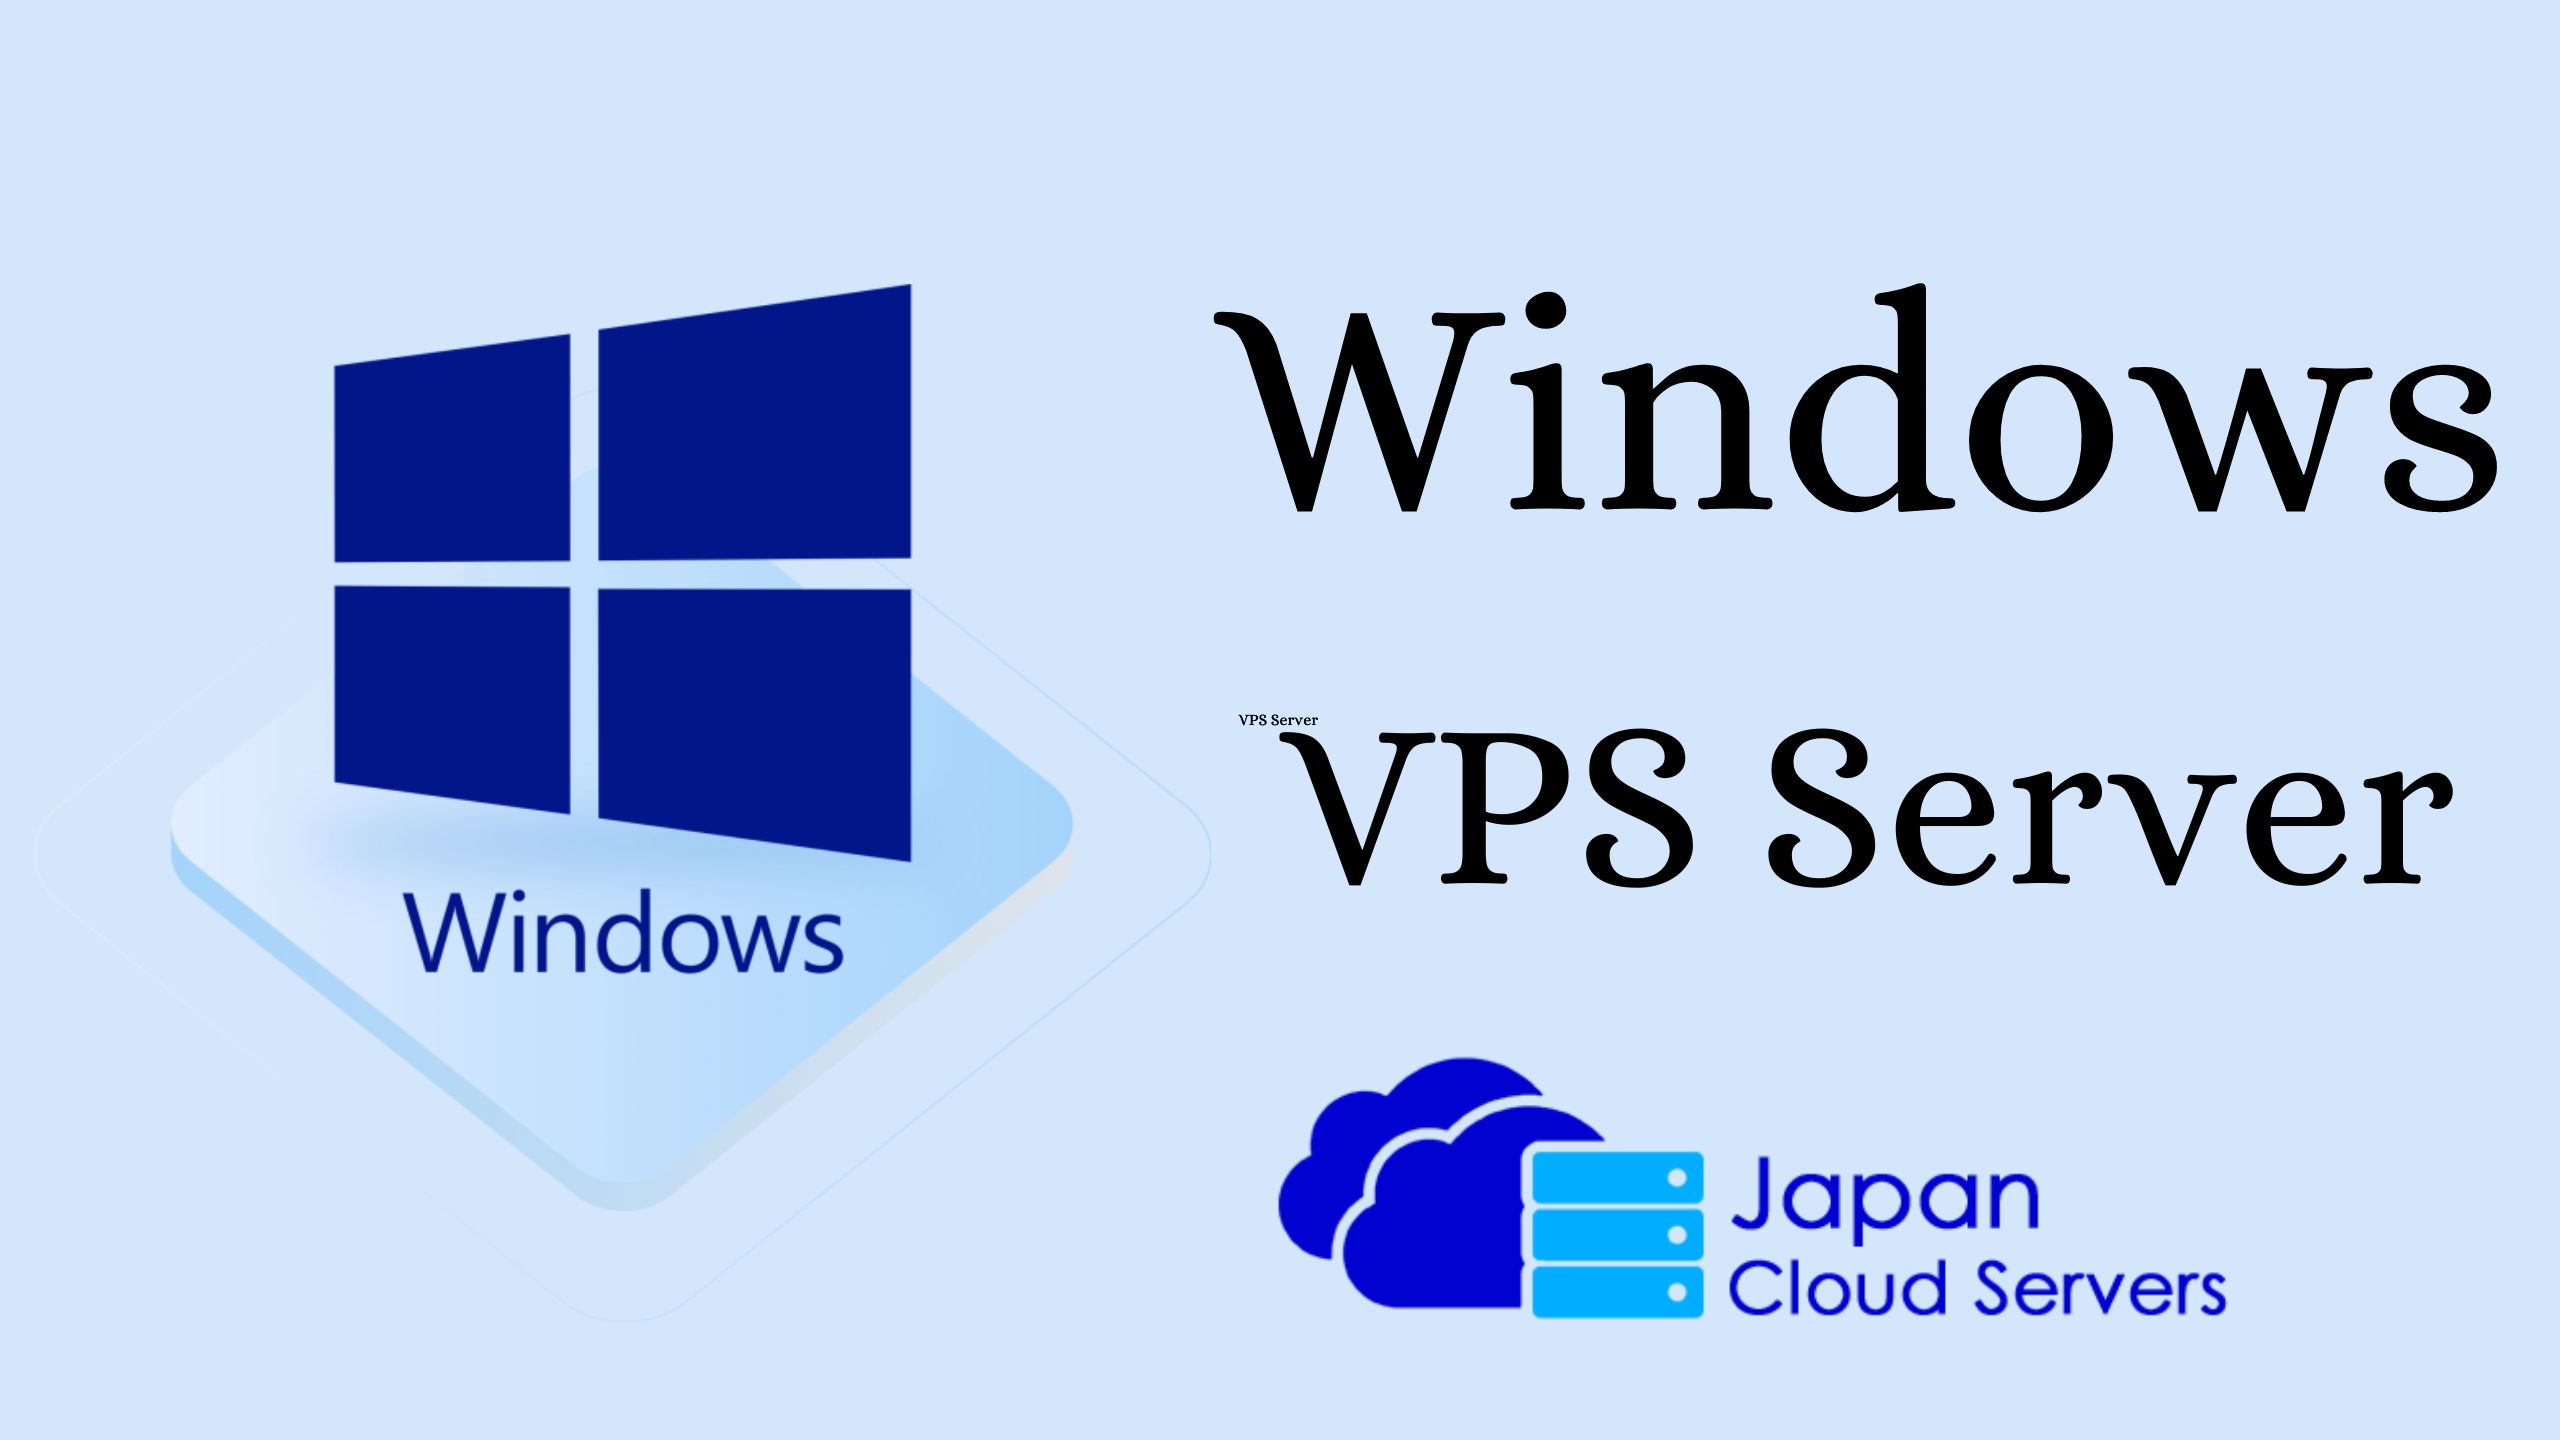 Windows VPs Server